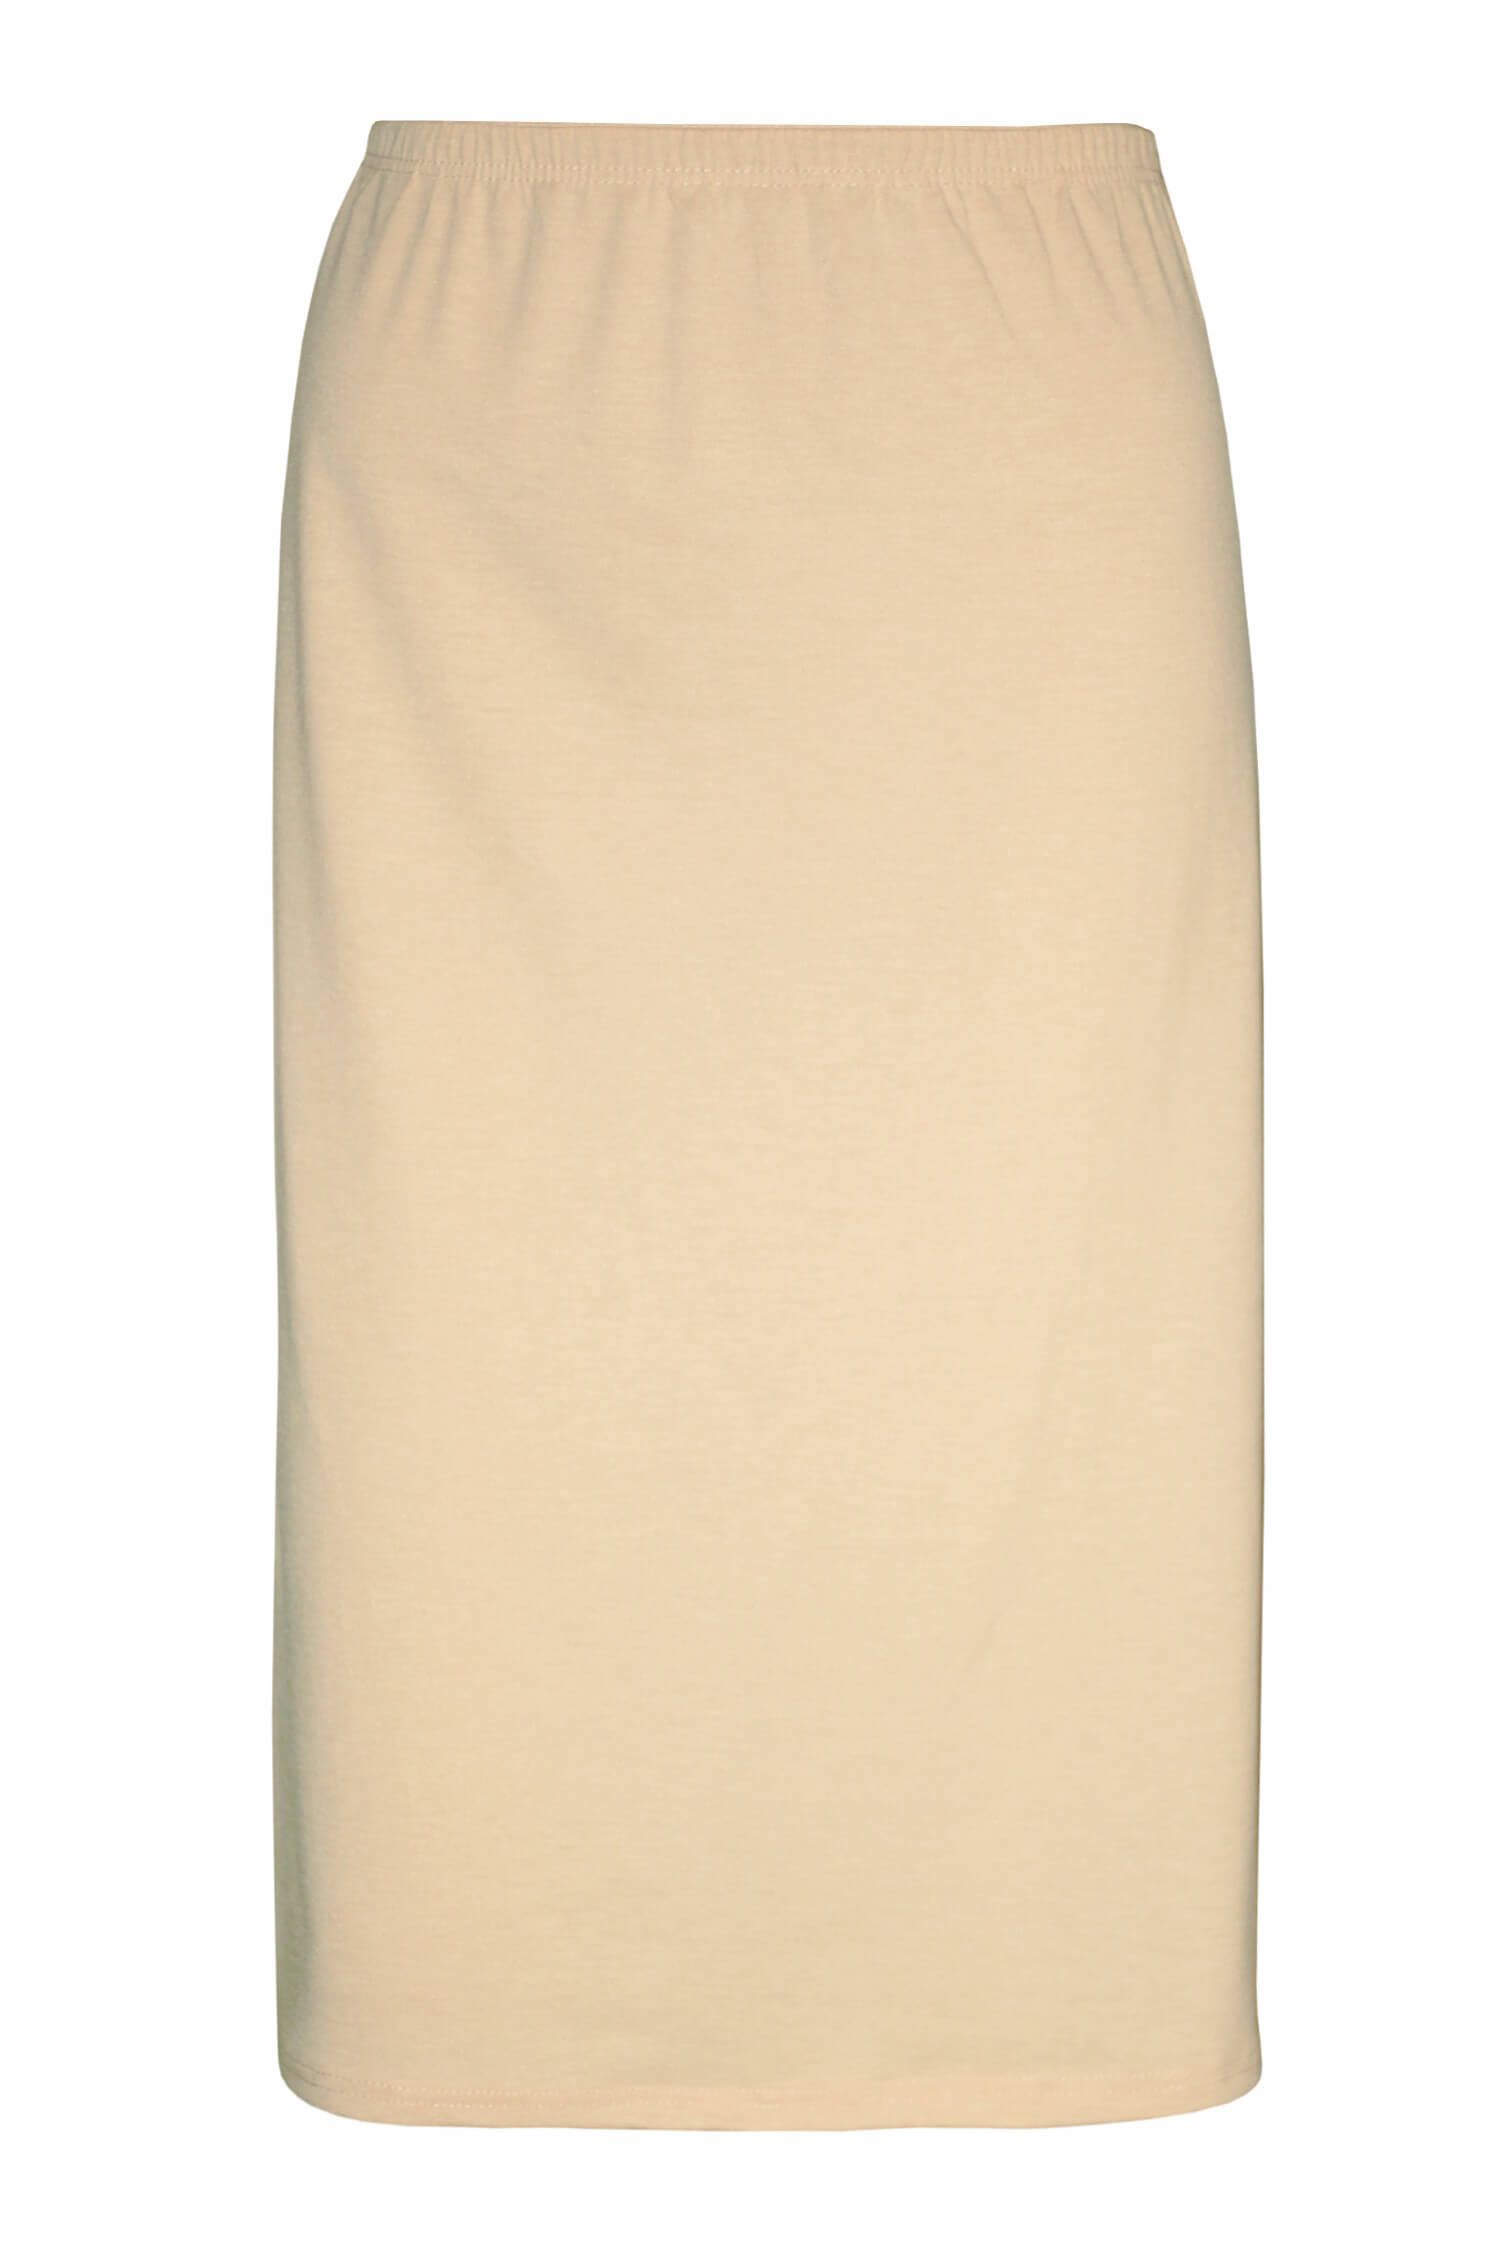 Arnoštka bavlněná spodnička - sukně 716 M béžová